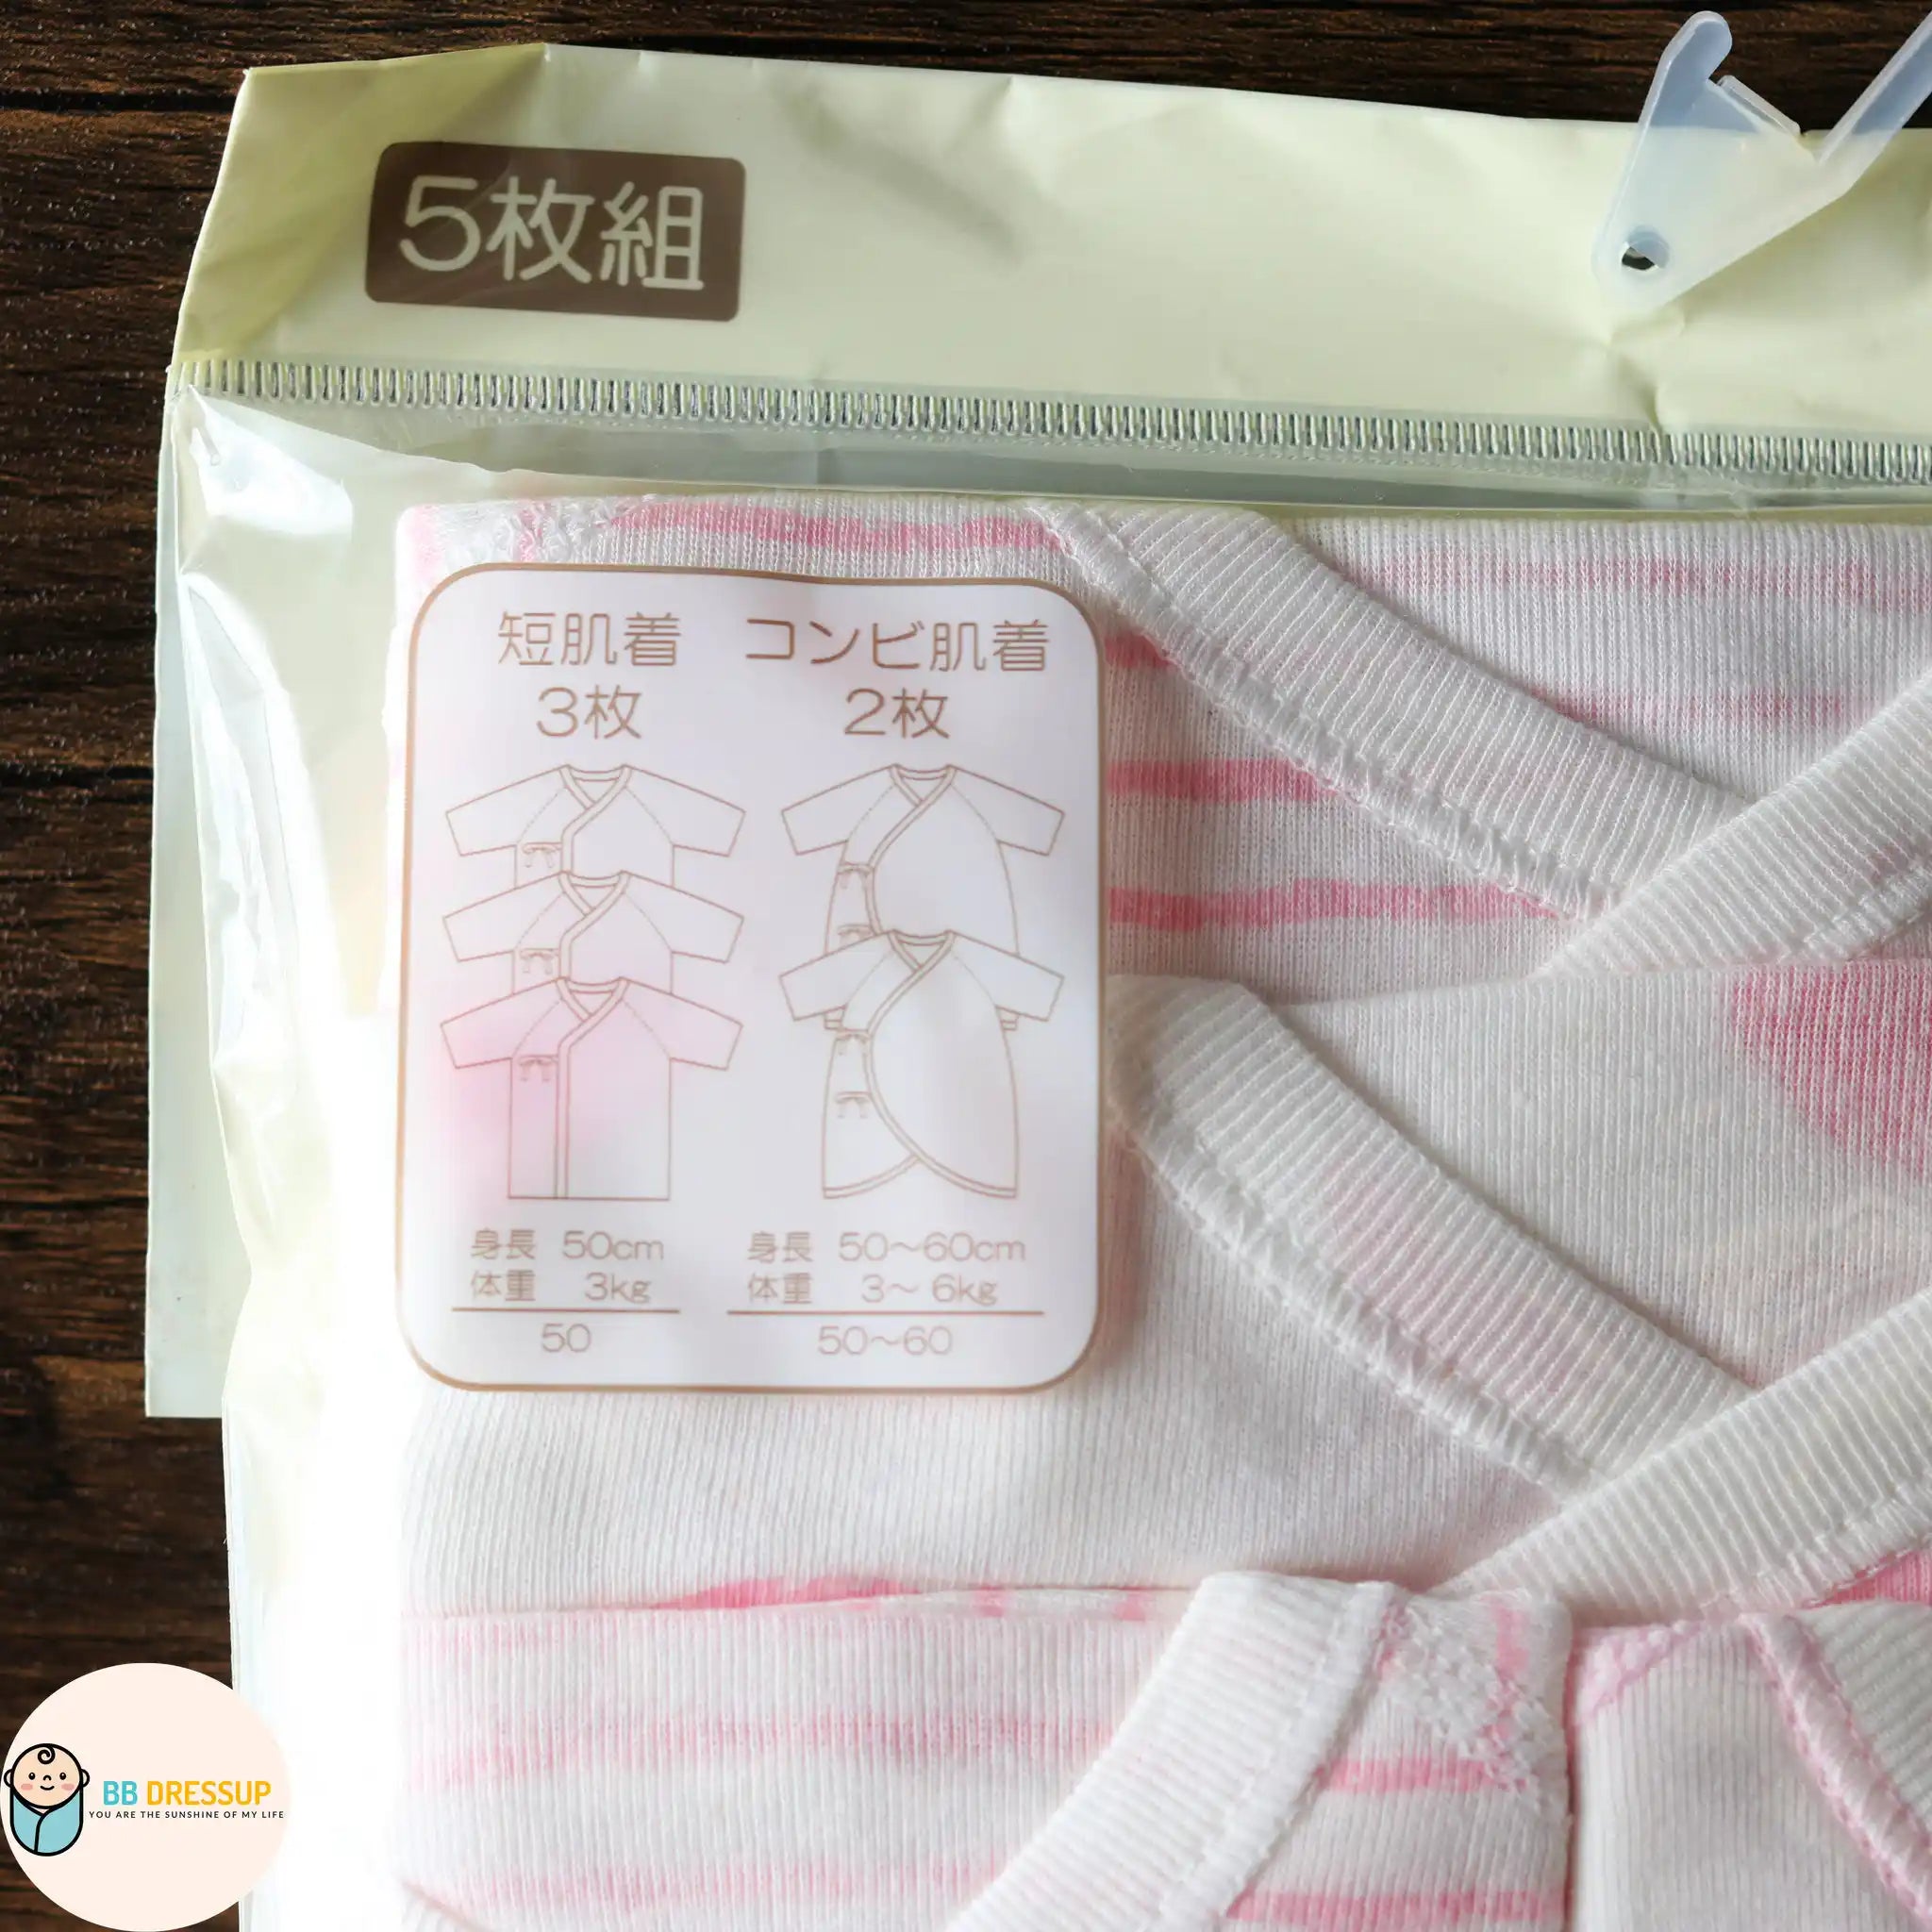 [現貨] 日本直送東商店初生嬰兒粉紅色內衣套裝A款 (五件裝) - BB Dressup